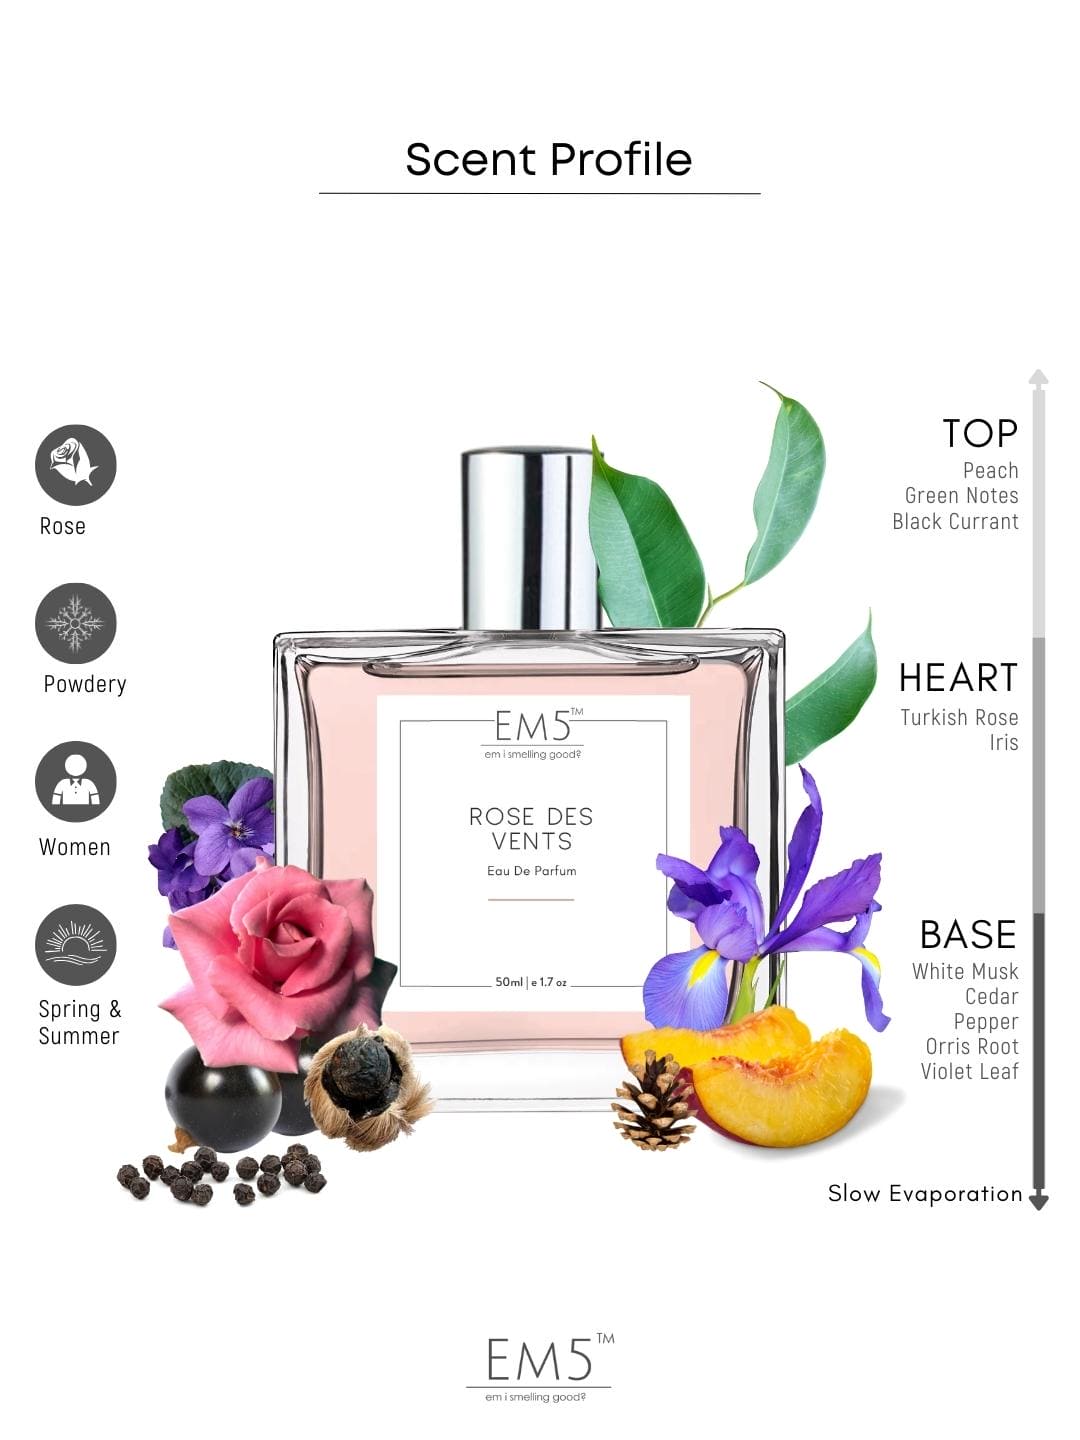 Shop for samples of Rose des Vents (Eau de Parfum) by Louis